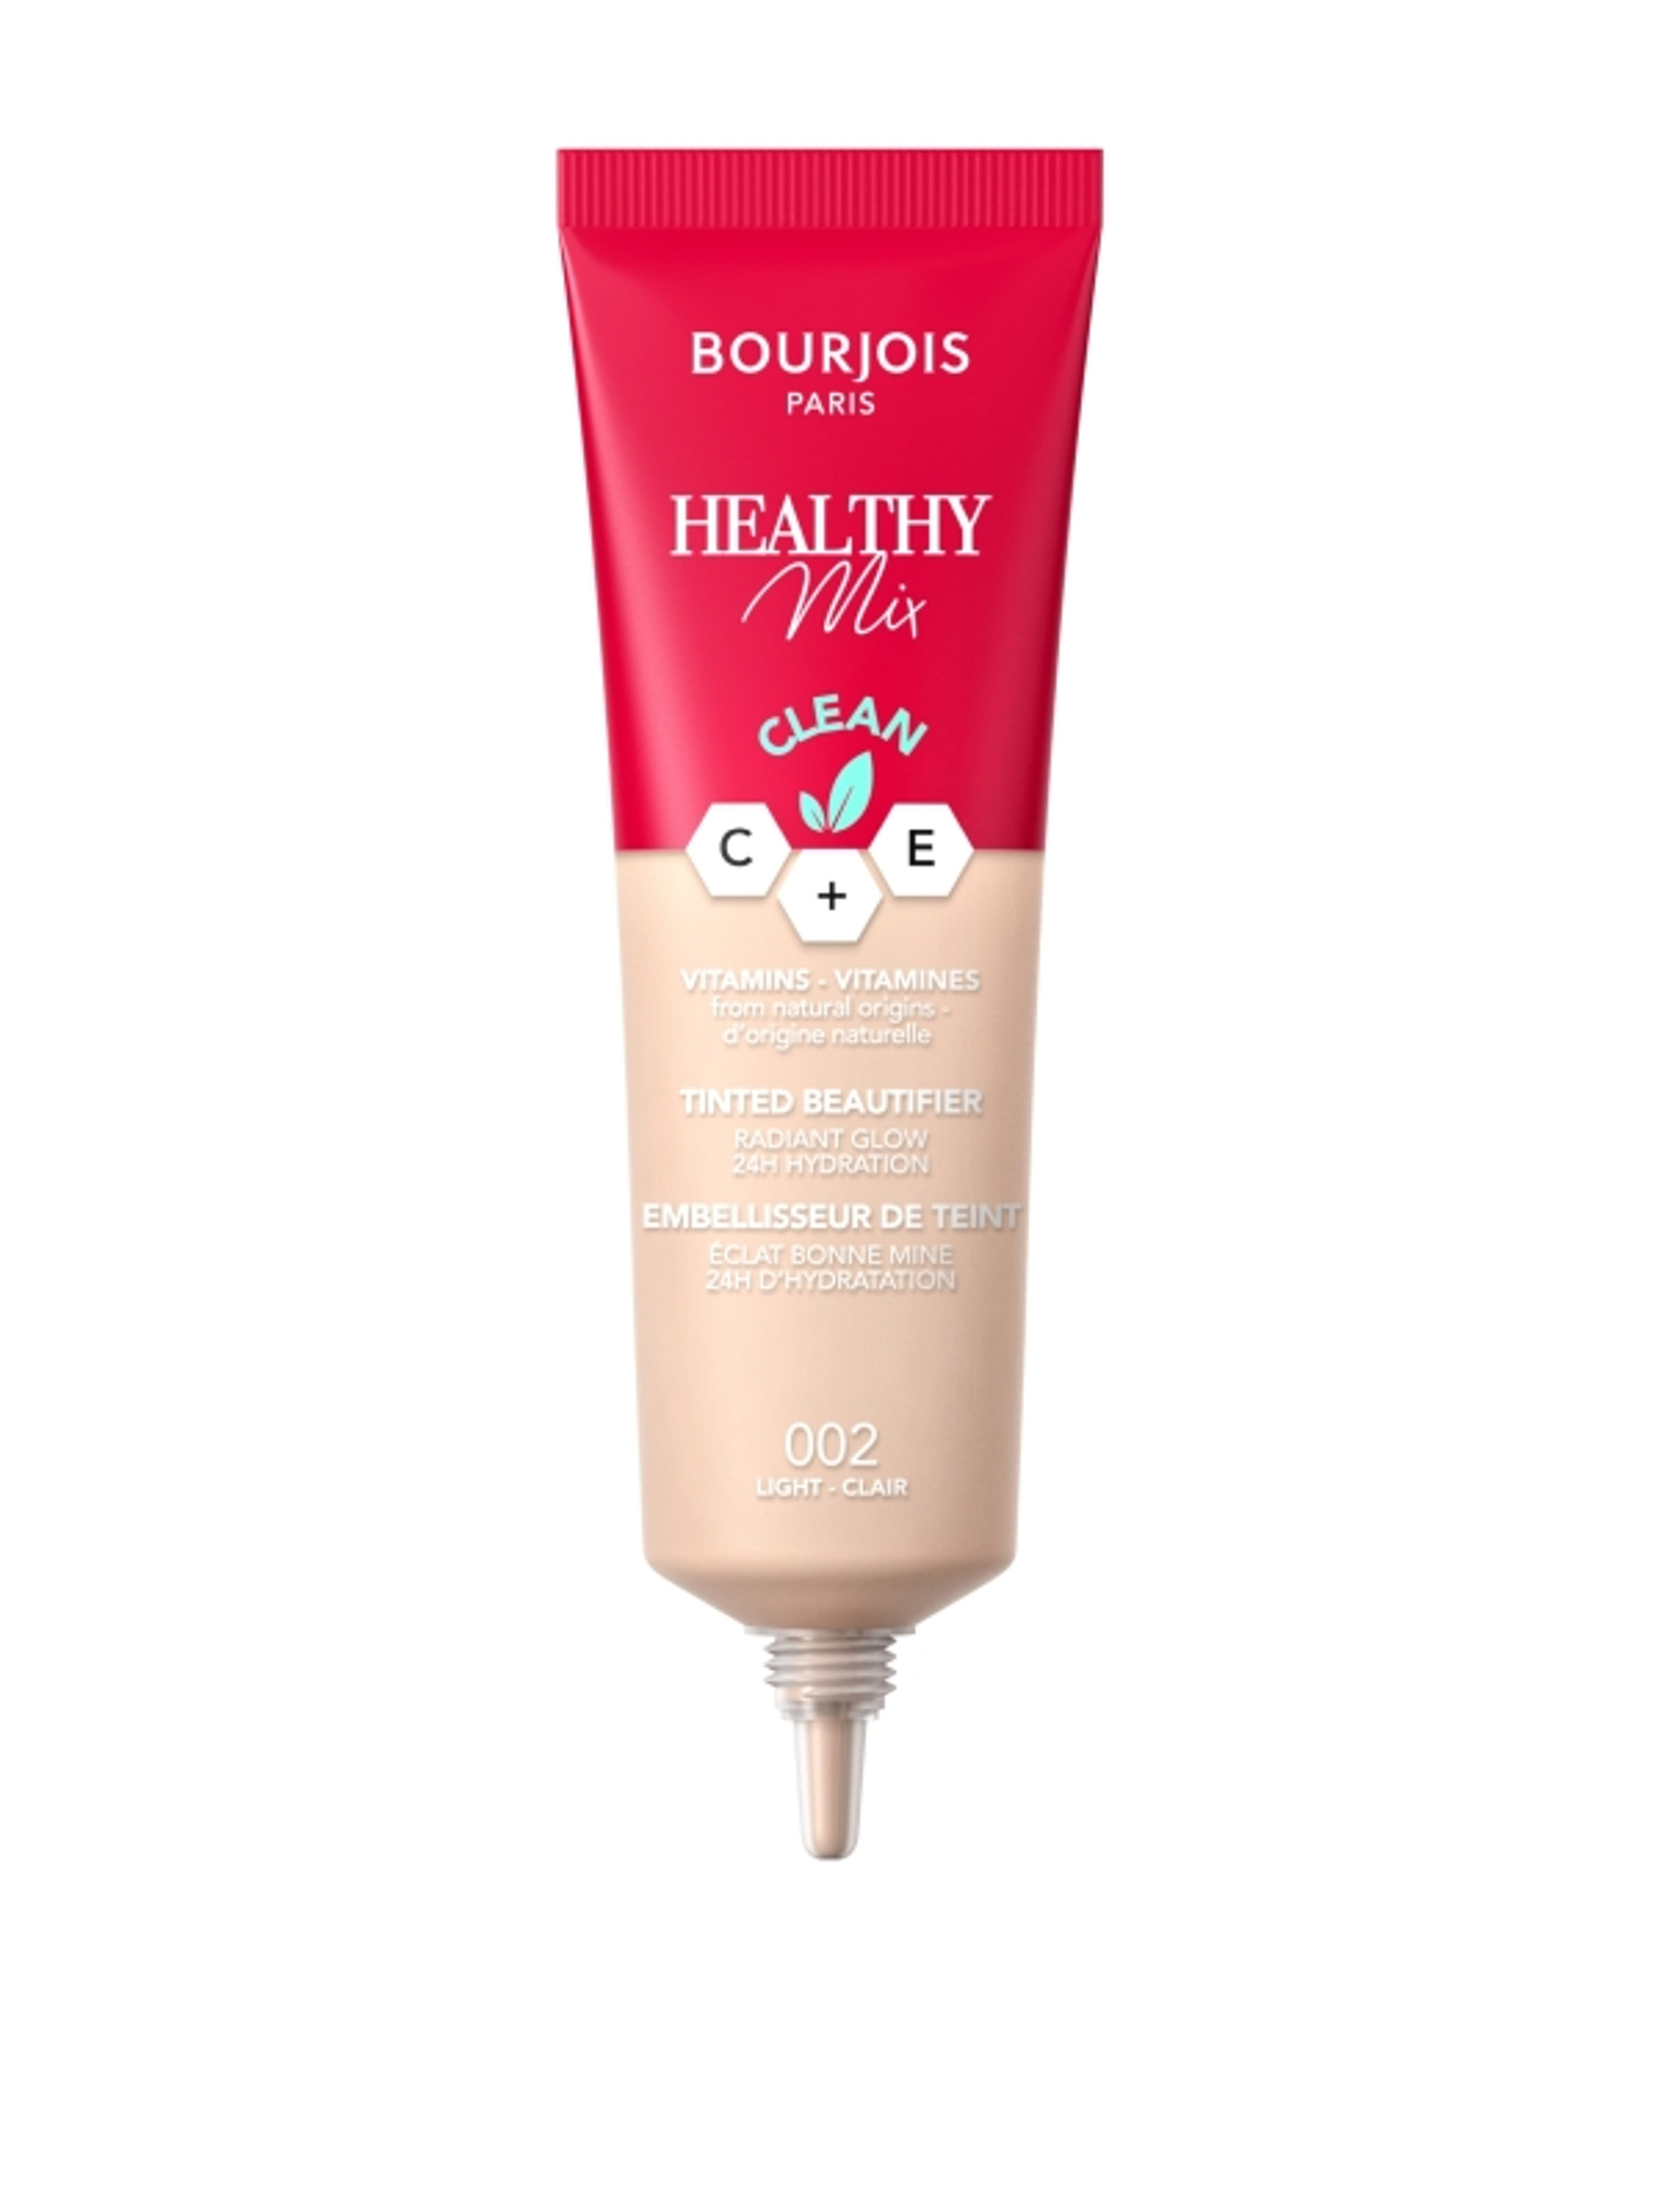 Bourjois Healthy Mix színezett arckrém /002 - 1 db-2